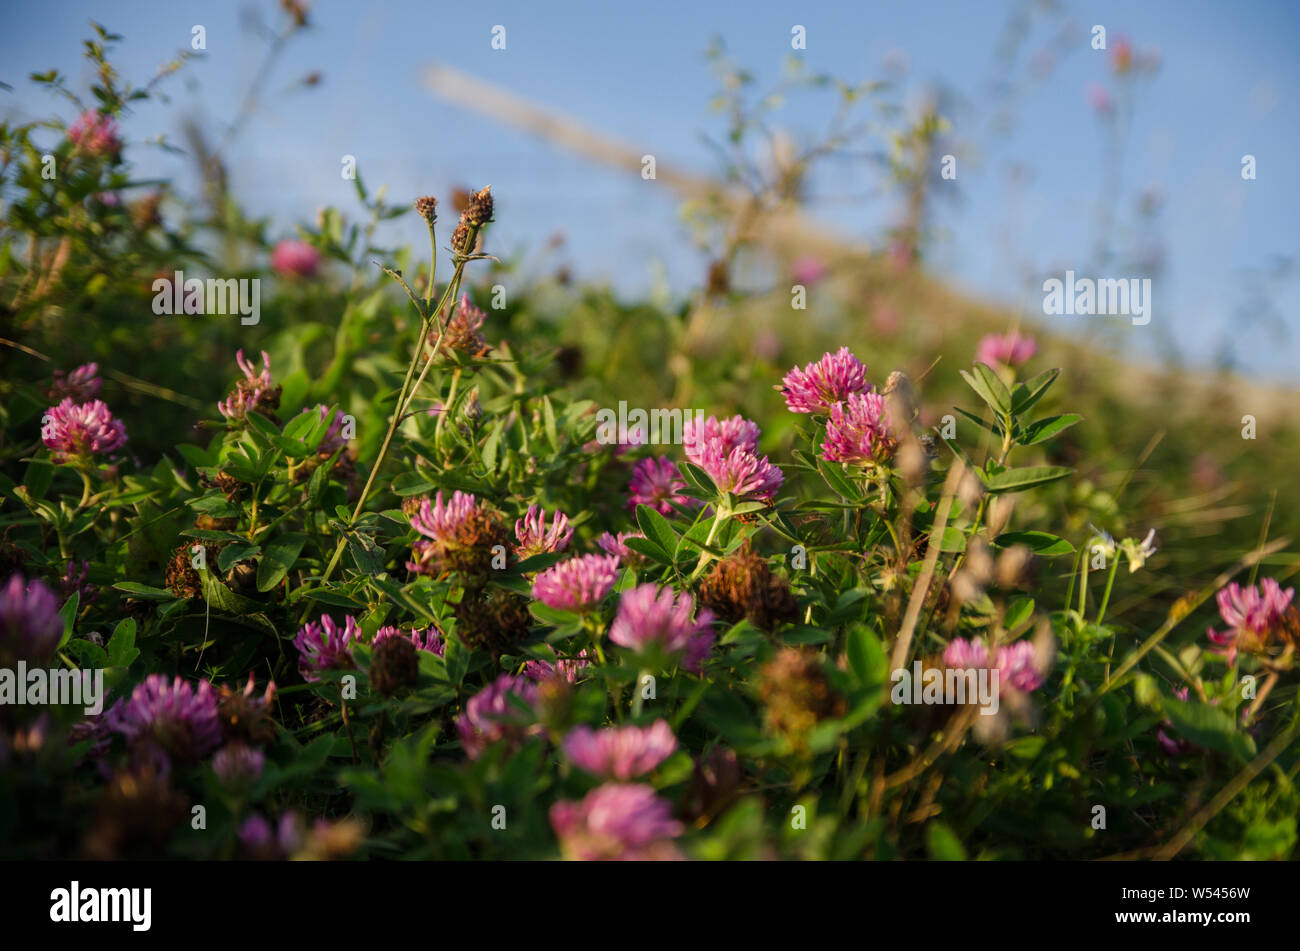 Sun shining through wild medicinal herbs Stock Photo